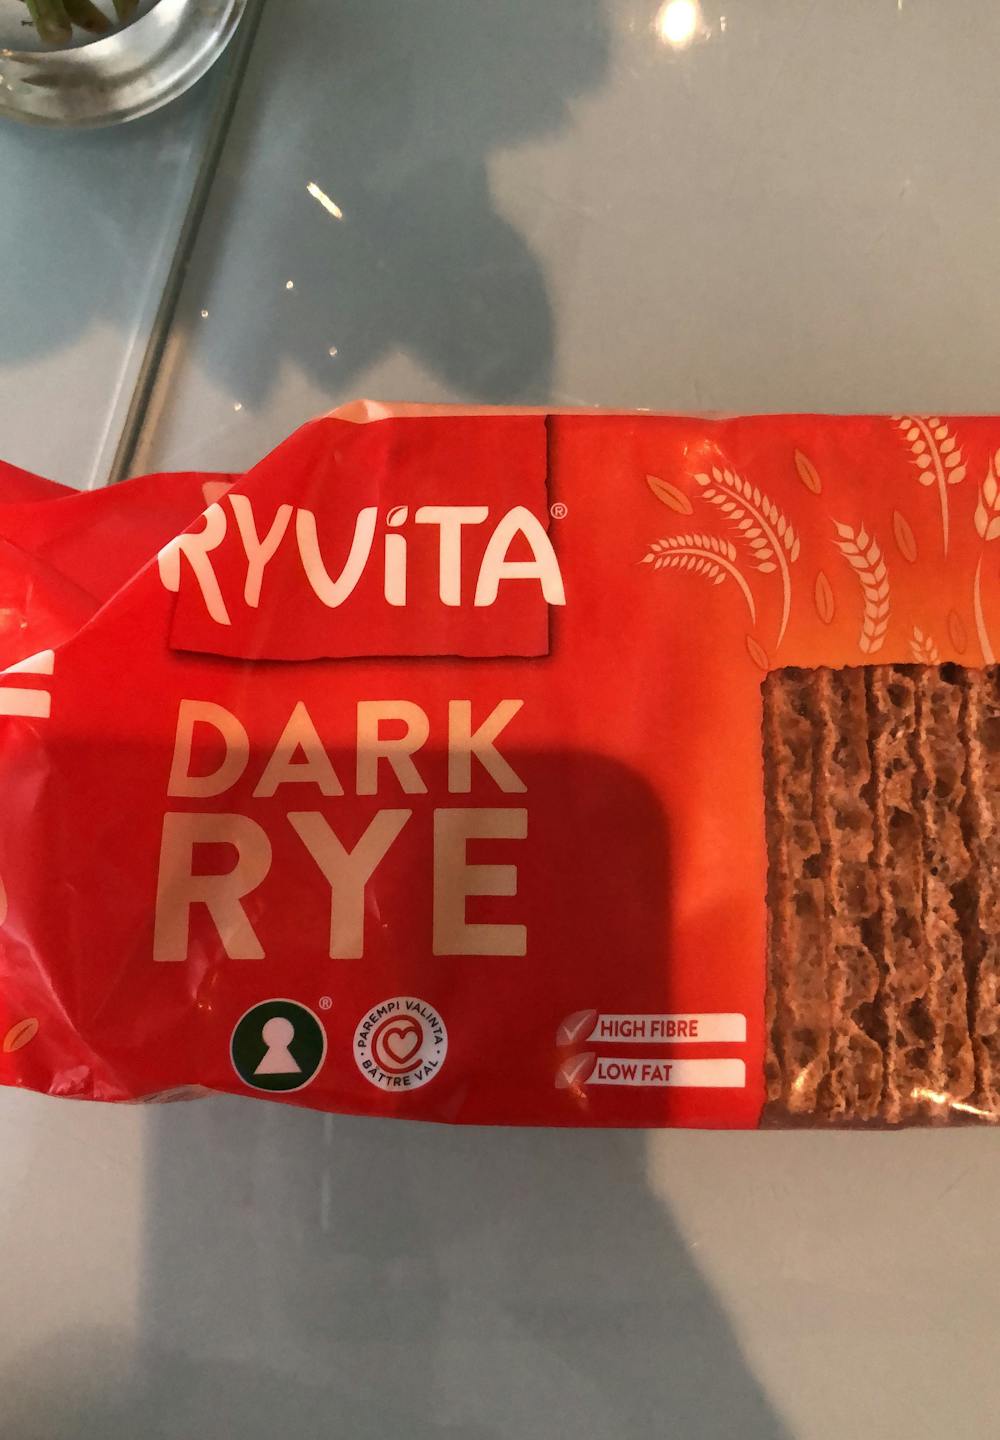 Dark rye, Ryvita